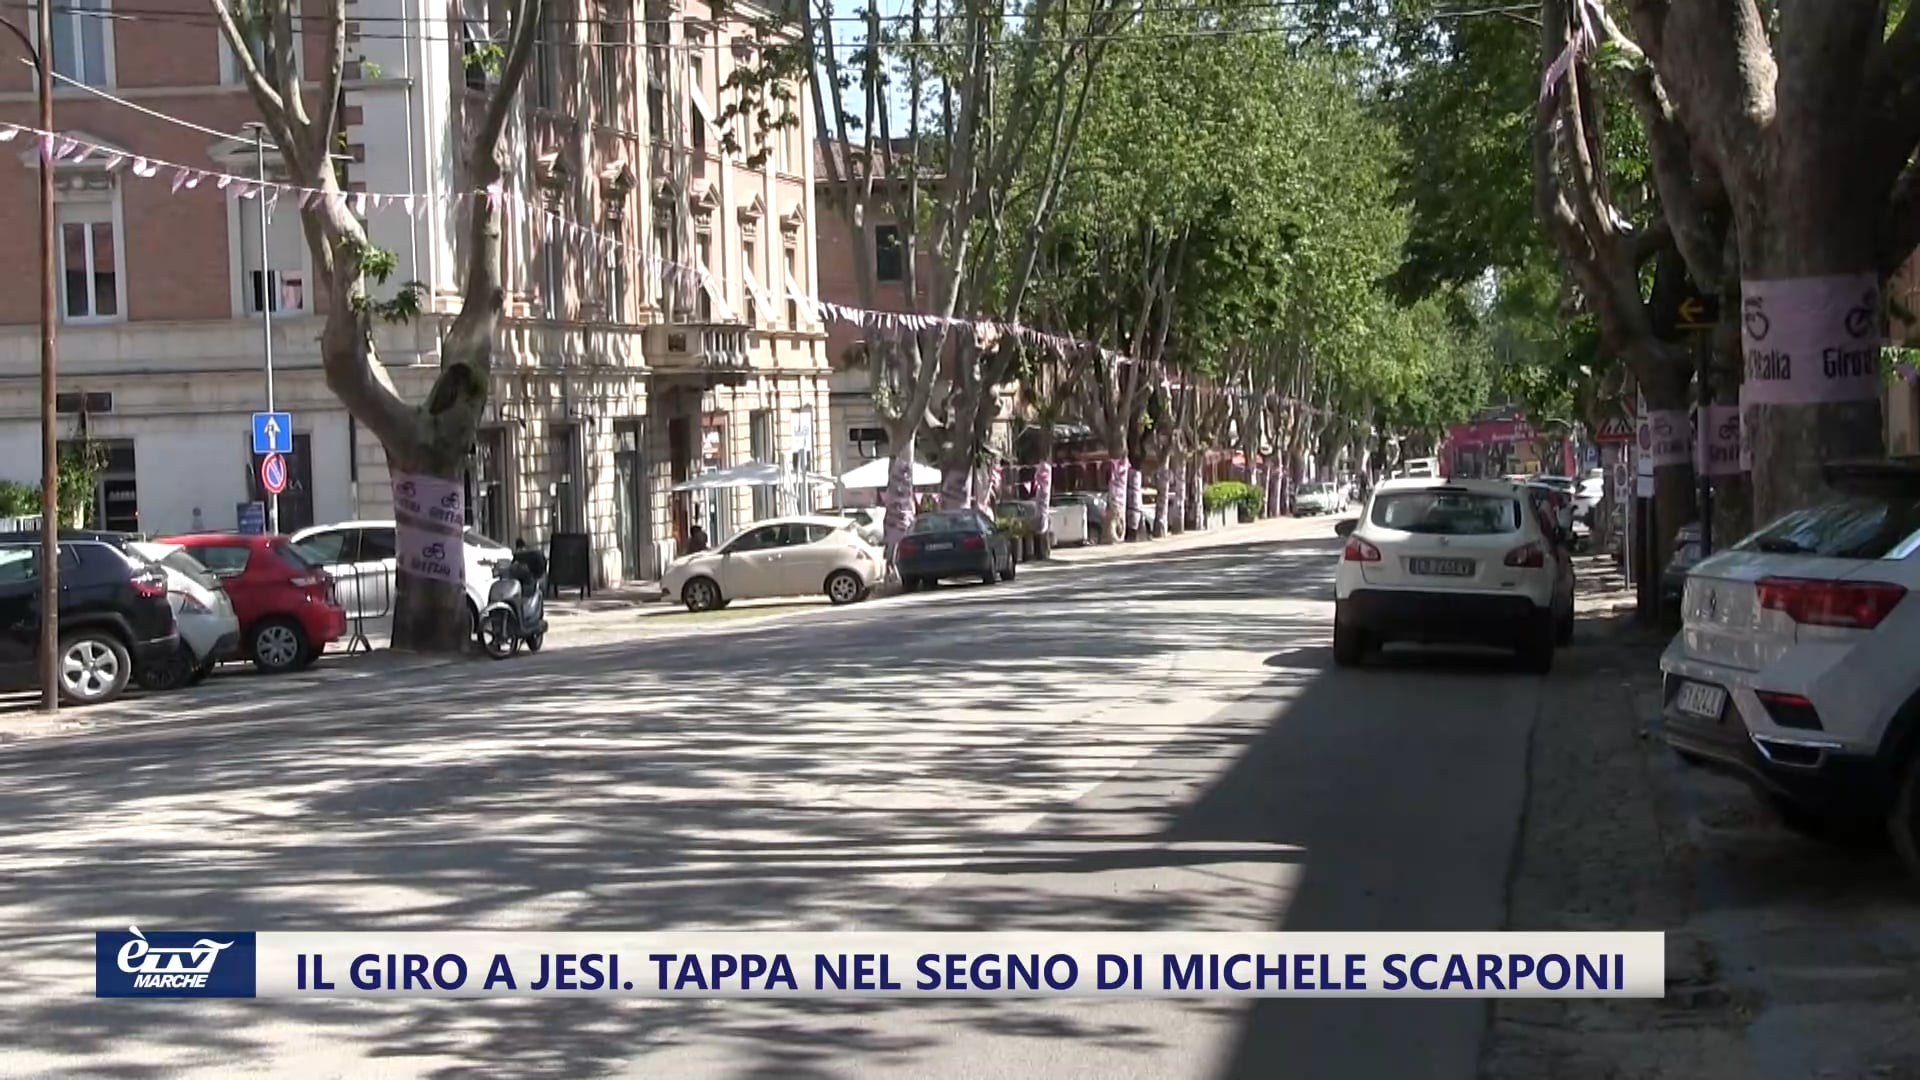 Il Giro d'Italia a Jesi. Tappa nel segno di Michele Scarponi - VIDEO